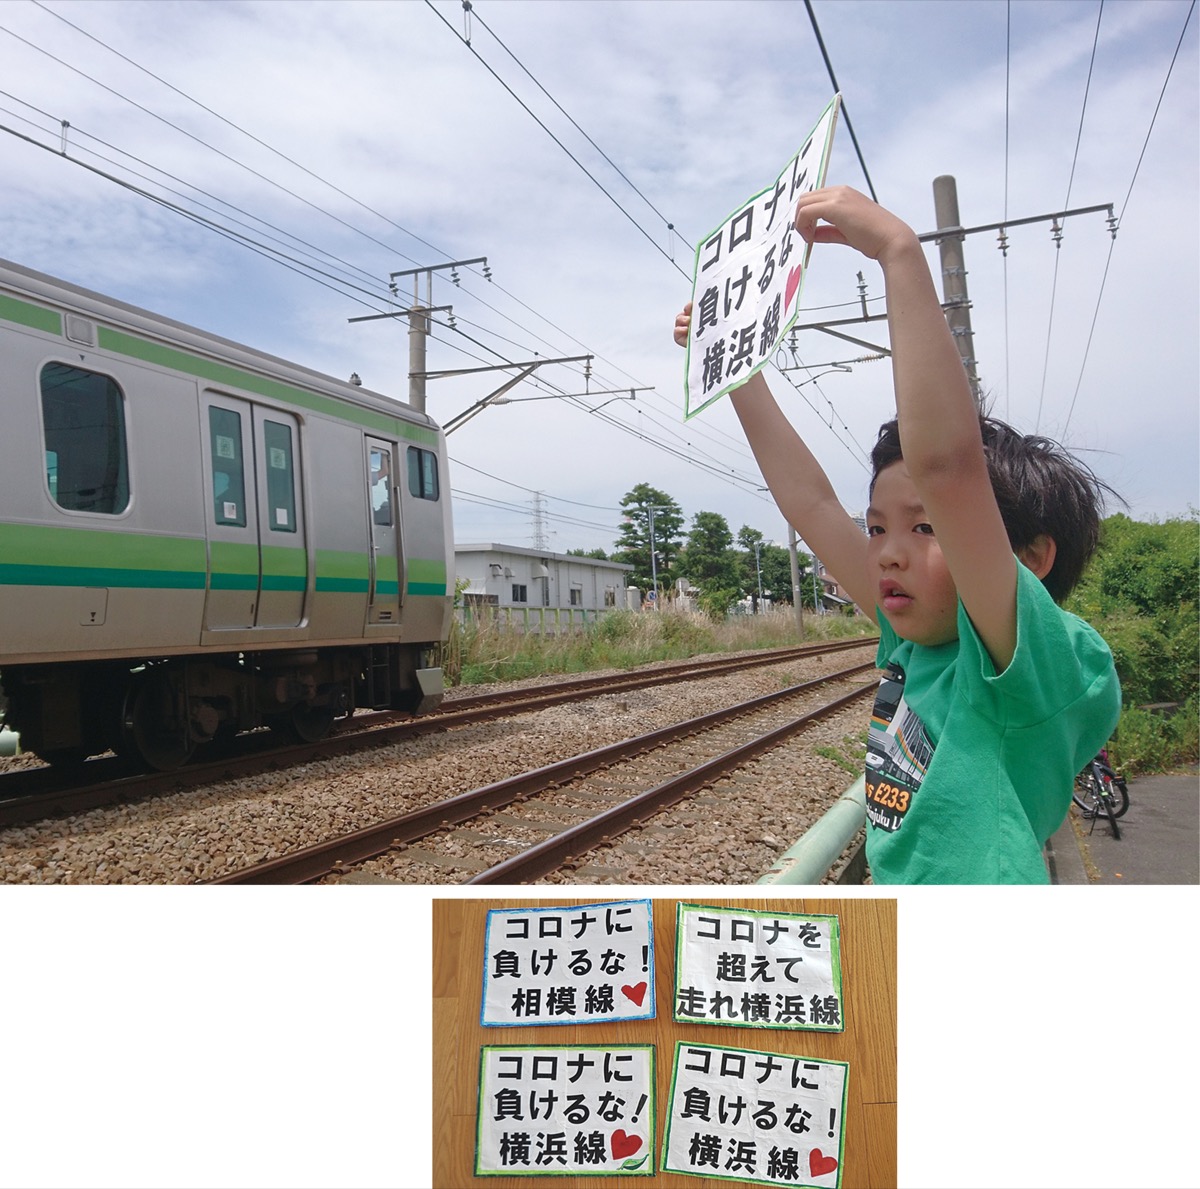 打倒コロナ 横浜線を応援 清新小４年 小俣慶人くん さがみはら中央区 タウンニュース